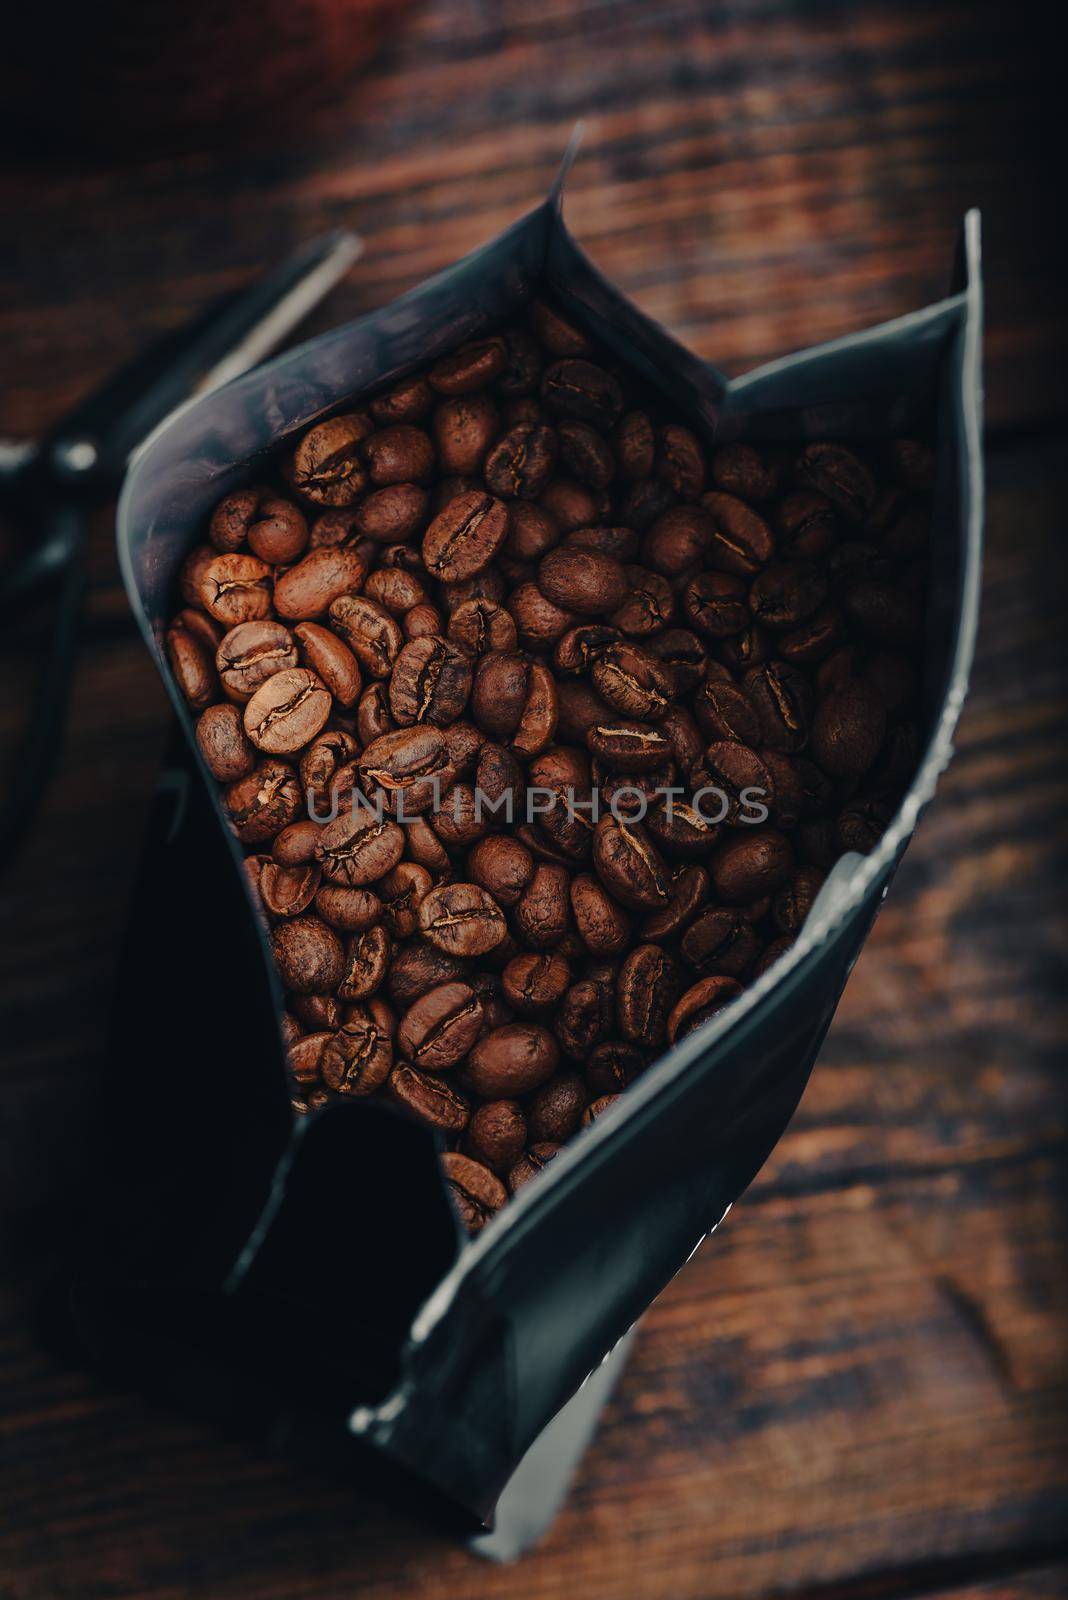 Bag Full of Coffee Beans by Seva_blsv